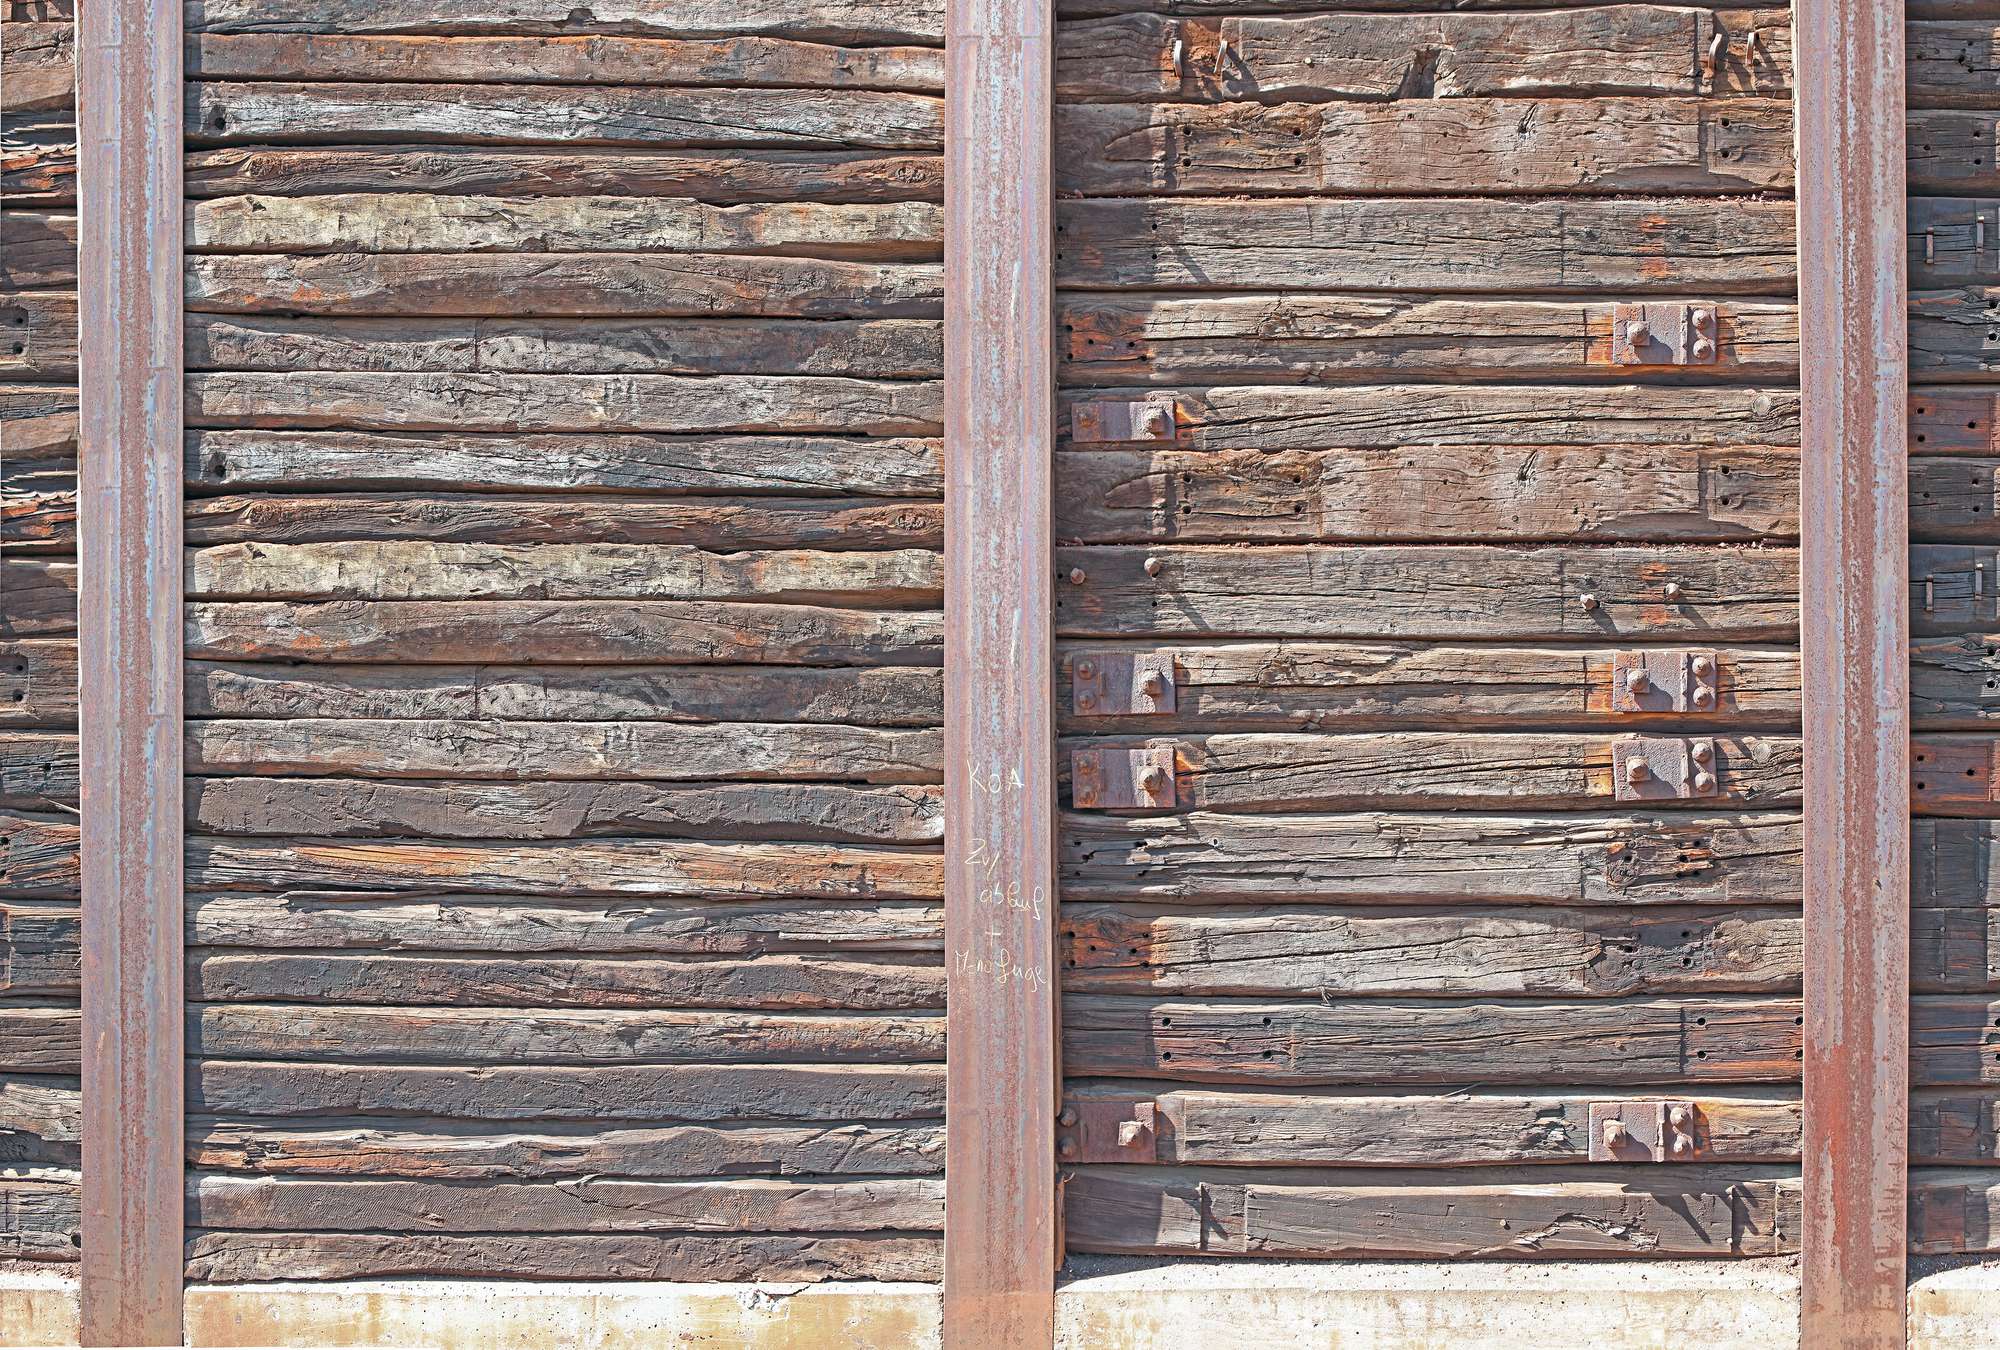             Papier peint panoramique avec des planches de bois rustiques entre des poutres en acier
        